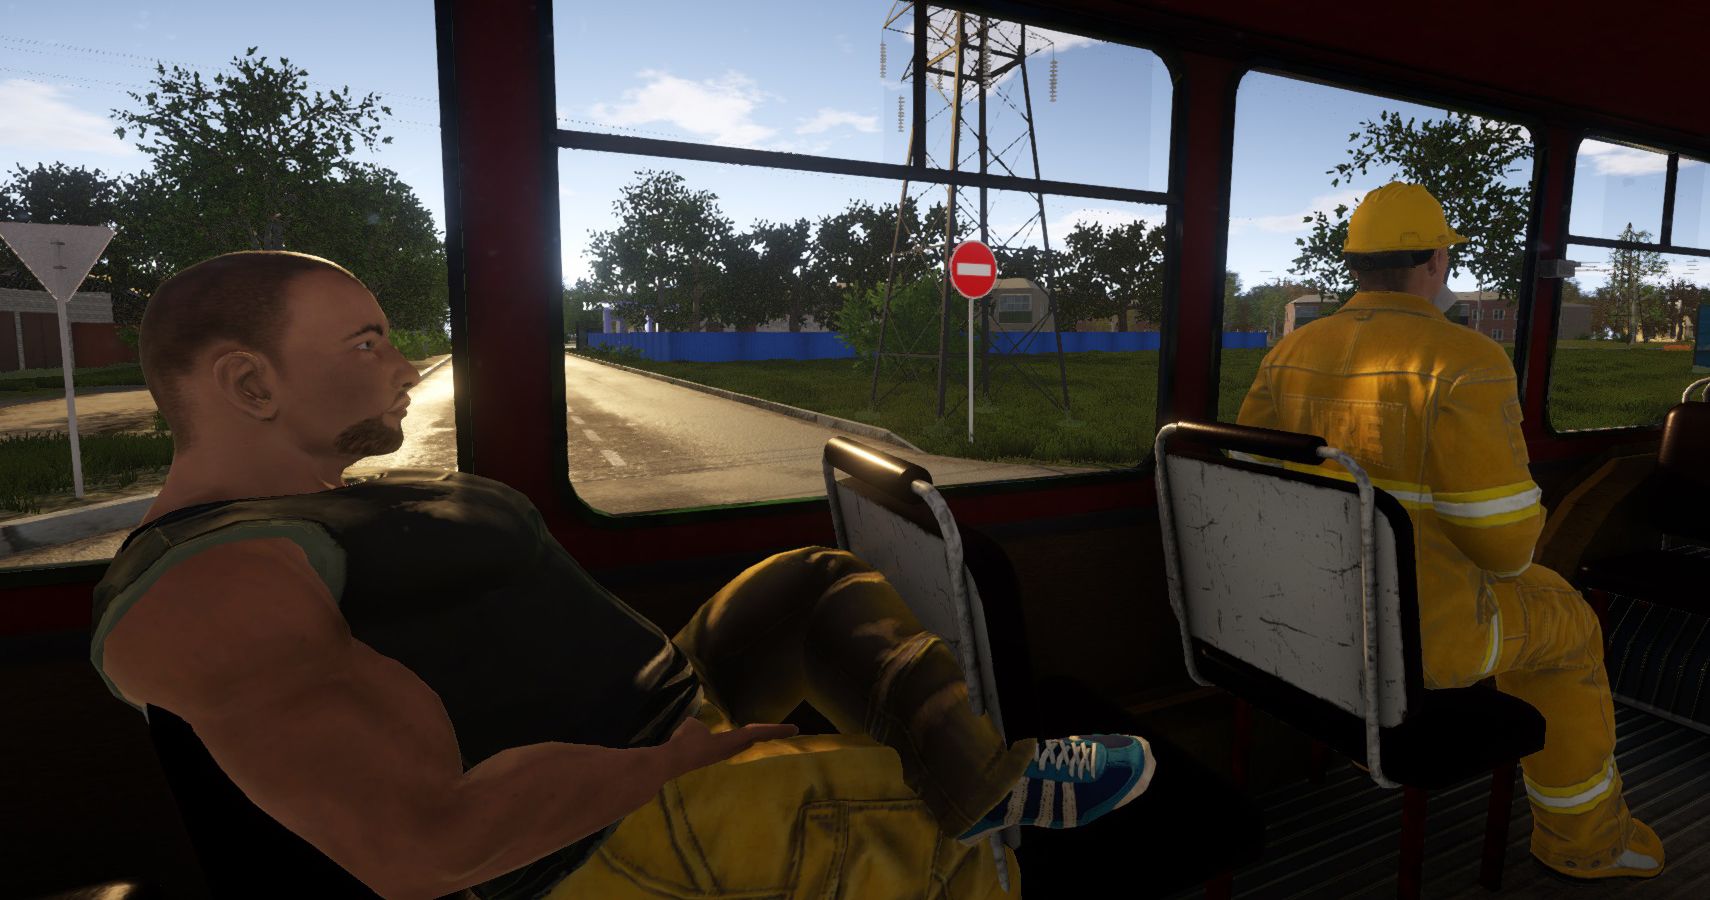 Bus Simulator 2019 Review A Bumpy Ride Through A Rough Neighborhood